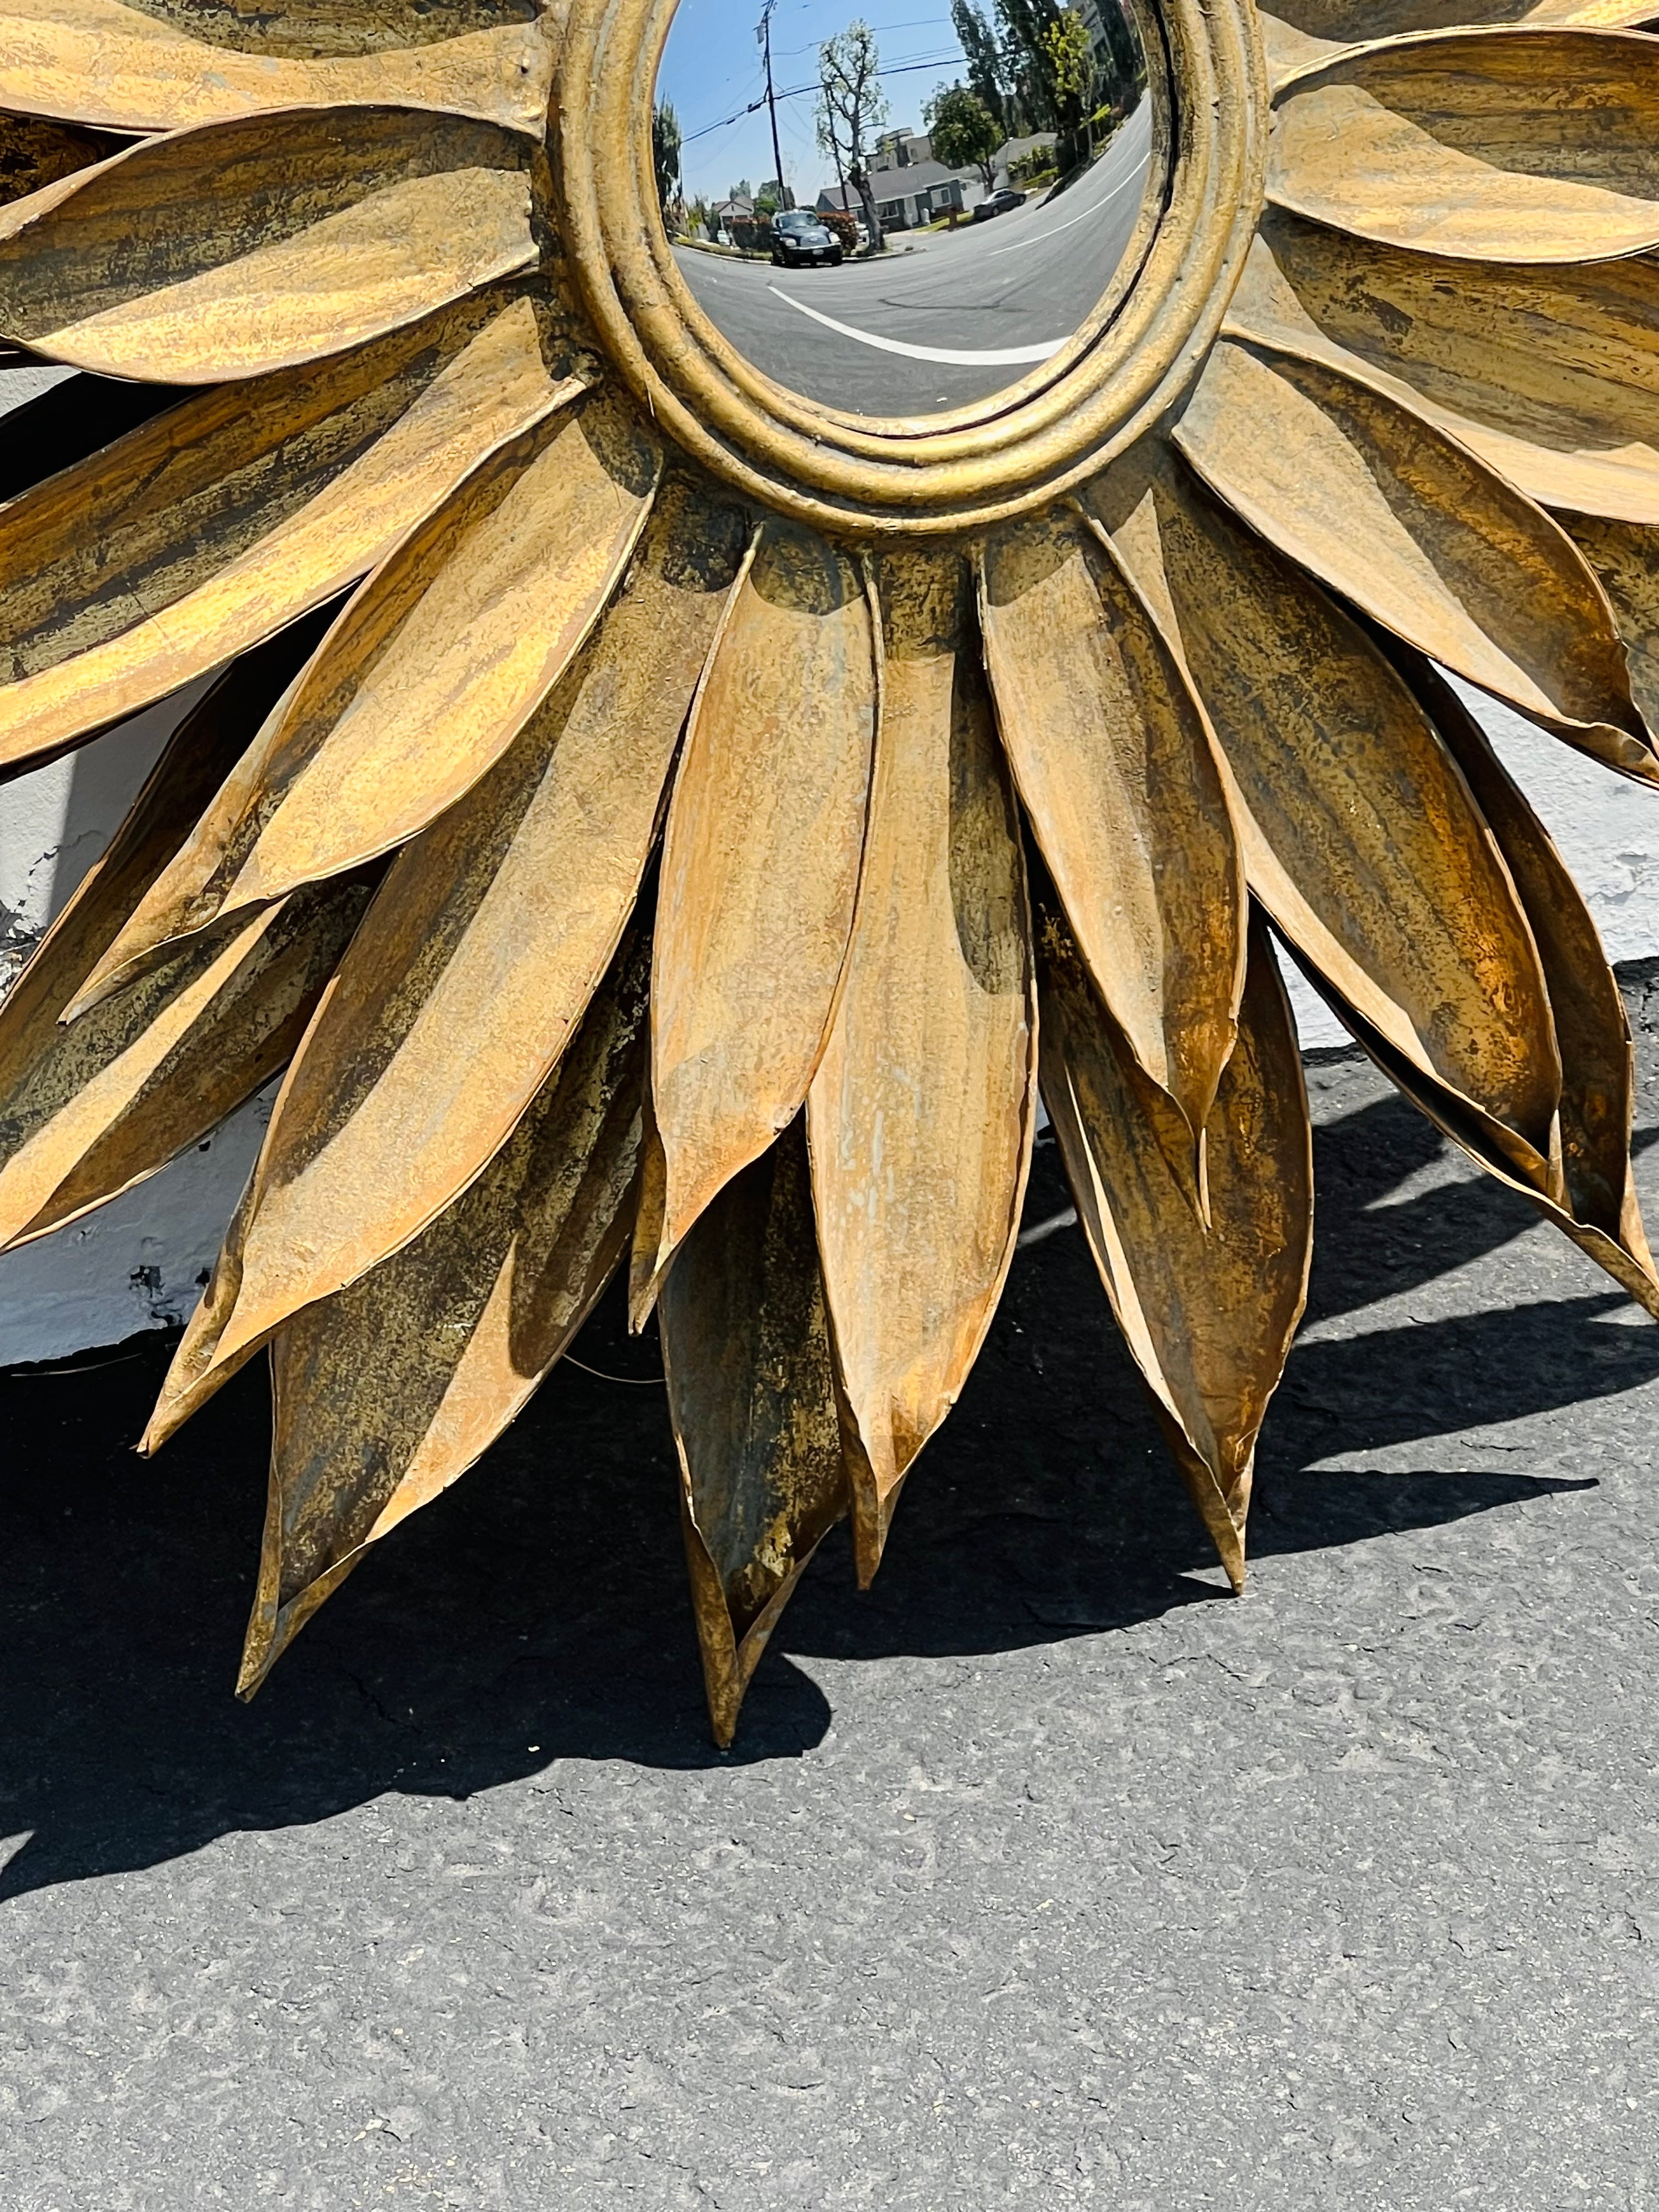 Sunflower Metal Mirror